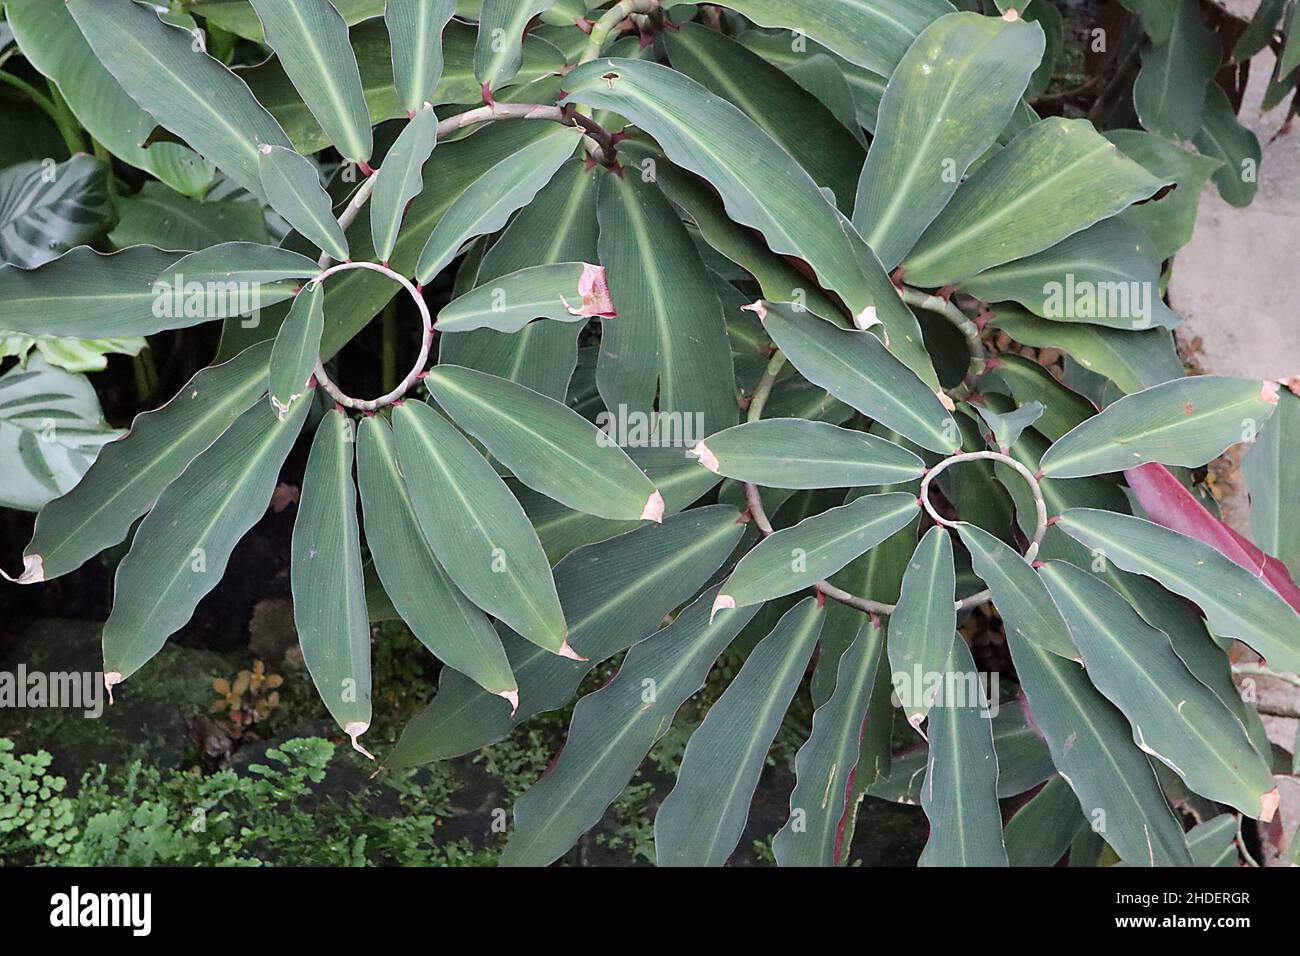 Cosus speciosus crêpe gingembre - grandes feuilles de vert gris elliptiques le long de la tige en spirale, janvier, Angleterre, Royaume-Uni Banque D'Images